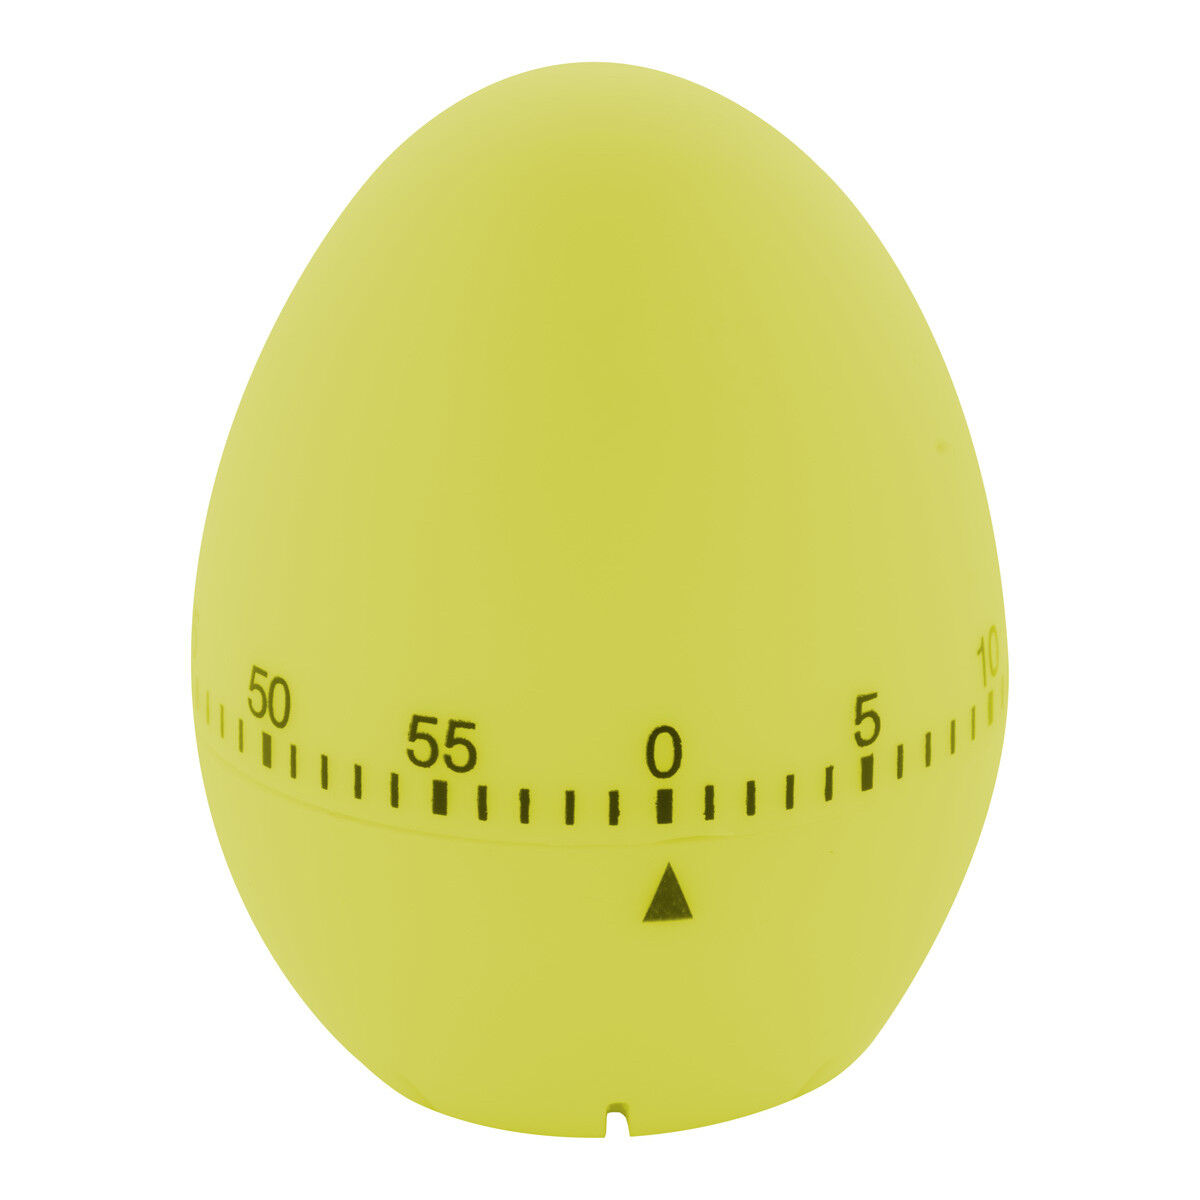 Egg-shaped kitchen timer